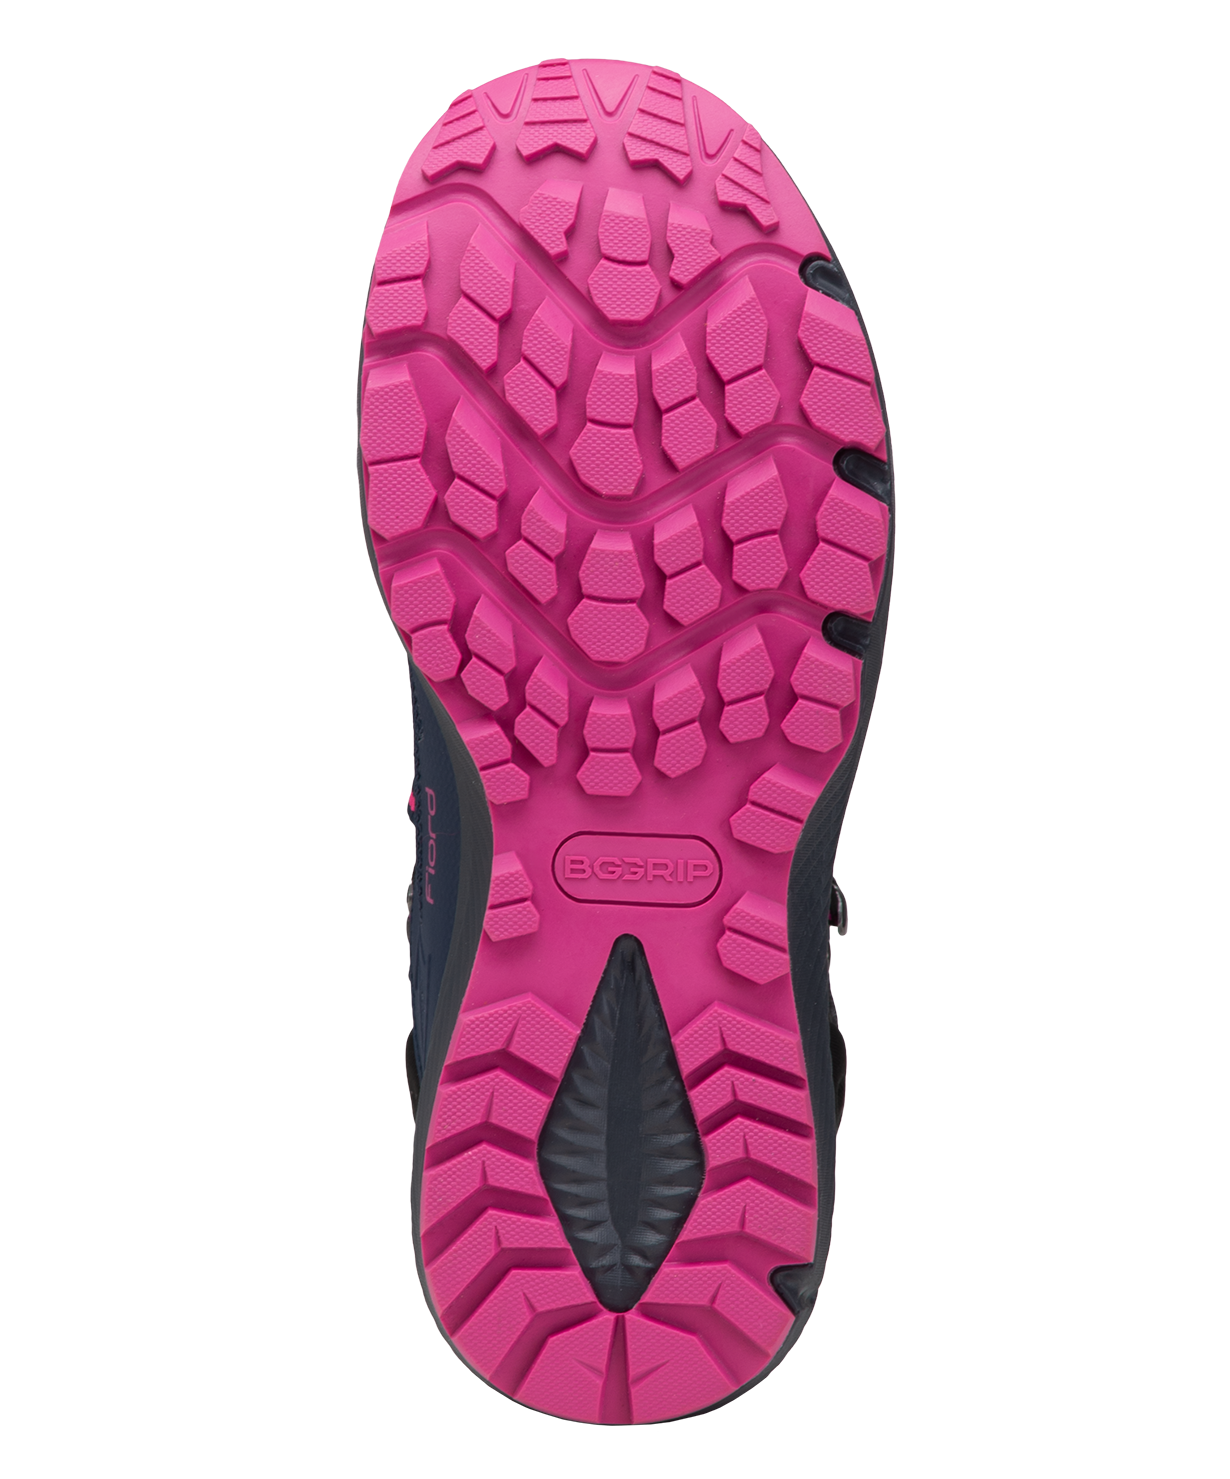 Ботинки Berger Fiord Waterproof, фиолетовый/черный, женский, р. 36-41 размер 38